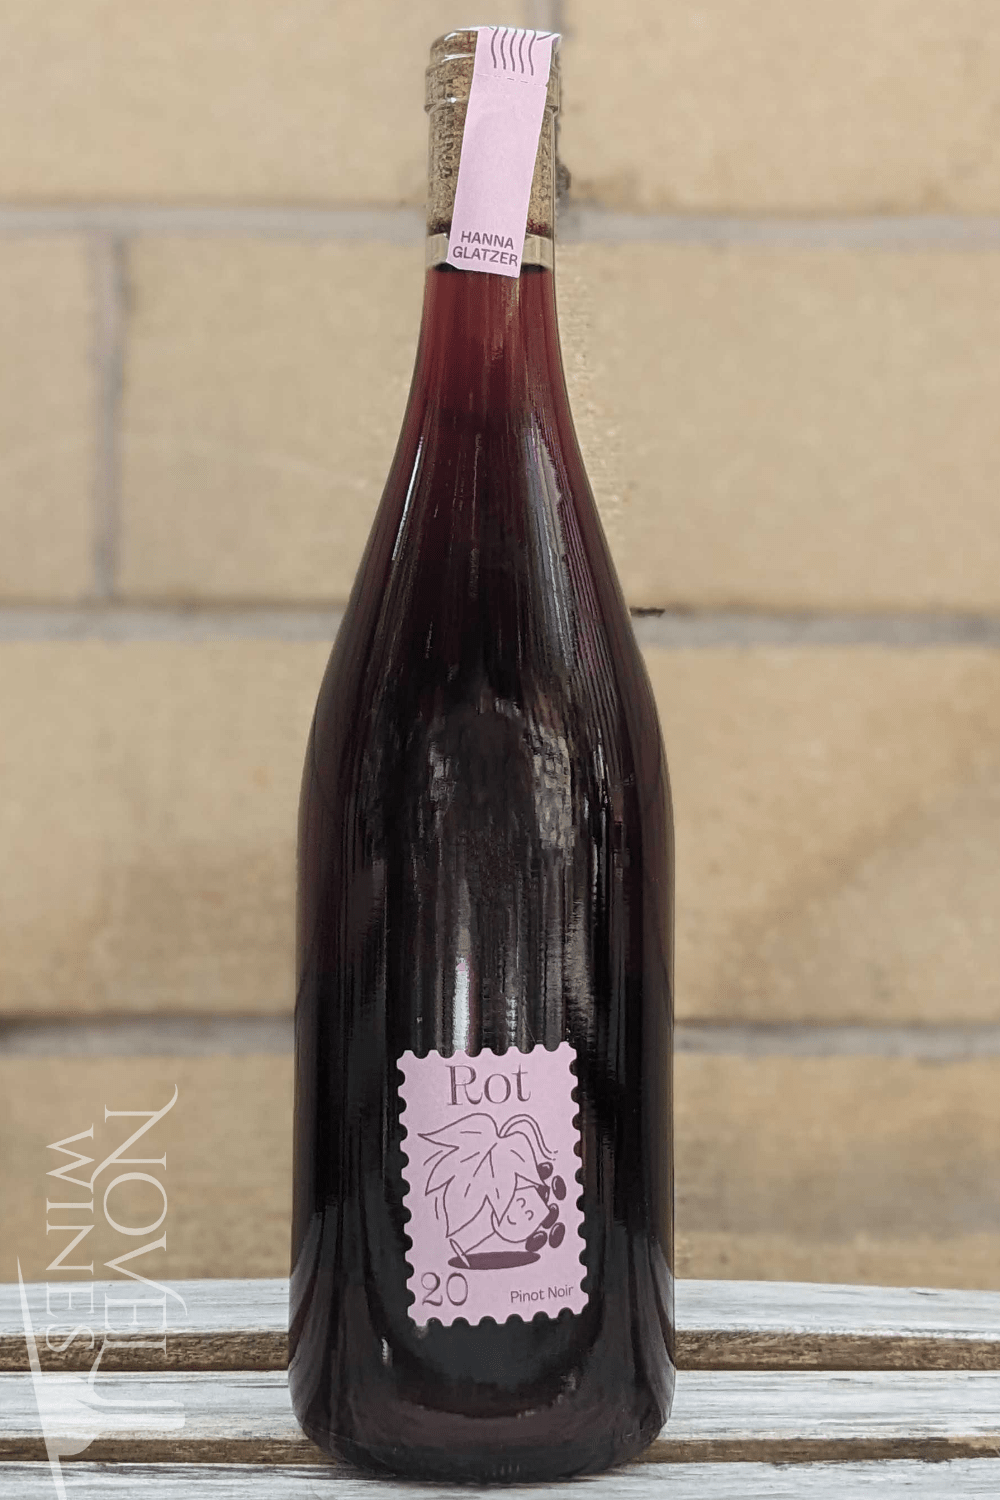 Glatzer Red Wine Hanna Glatzer's Organic Whole Bunch Pinot Noir 2020, Austria